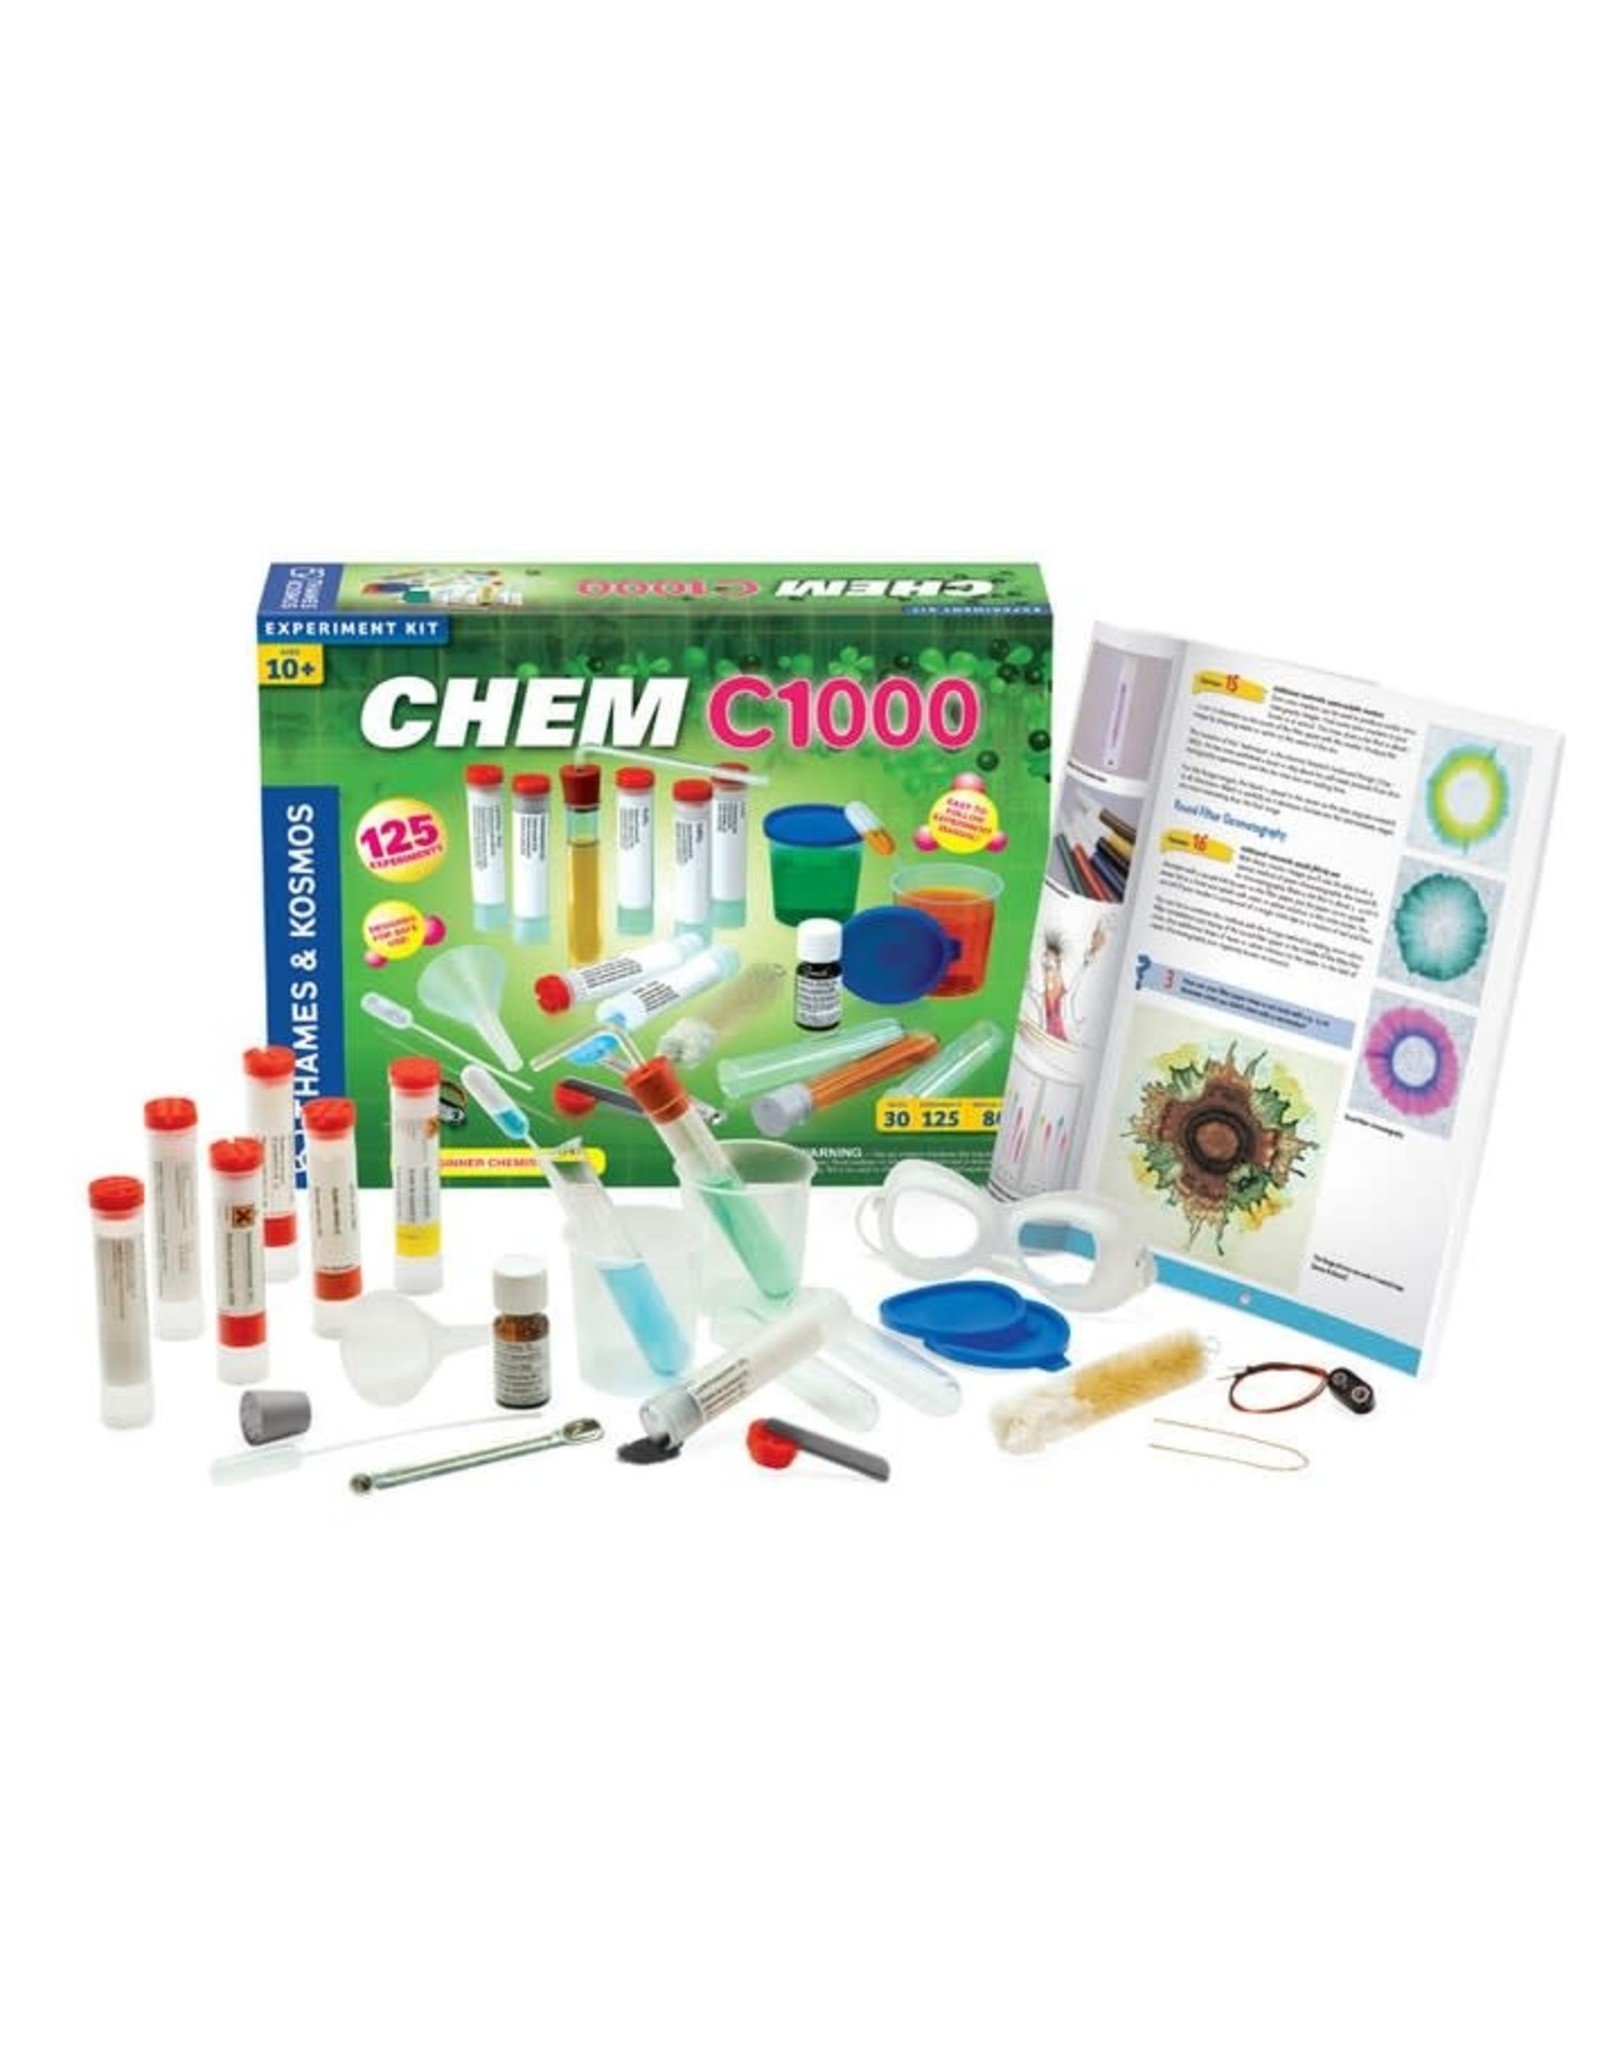 Chem C1000